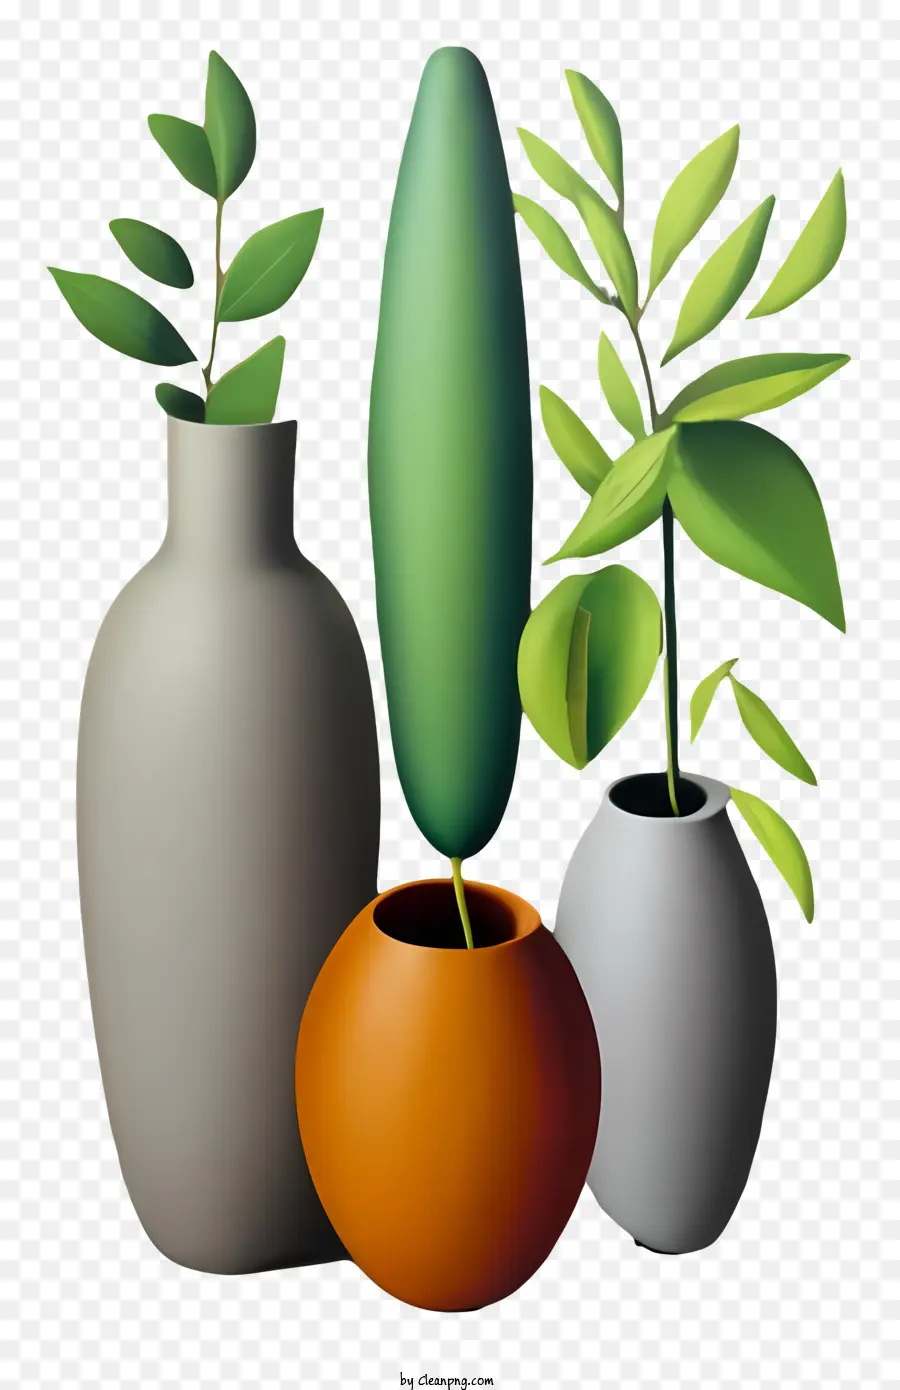 lila Blume - Vasen mit Pflanzen symbolisieren Wachstum und Leben